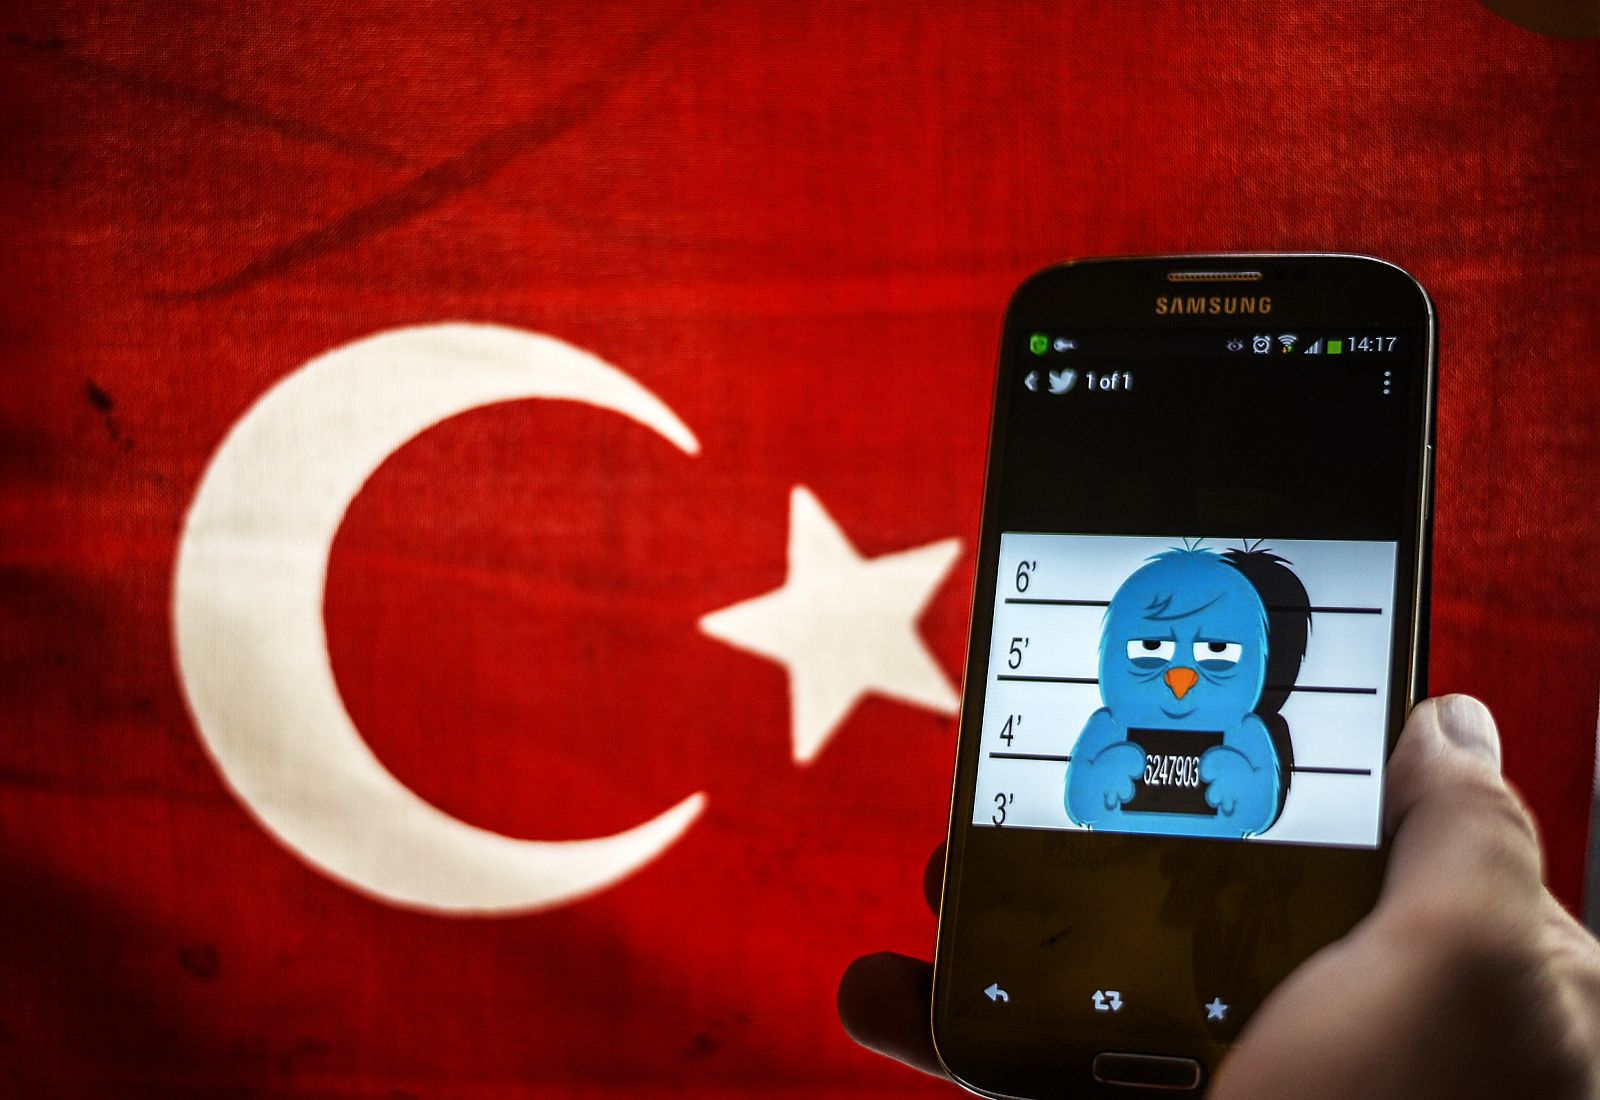 Imagen difundida por teléfono móvil para denunciar el cierre de Twitter en Turquía.